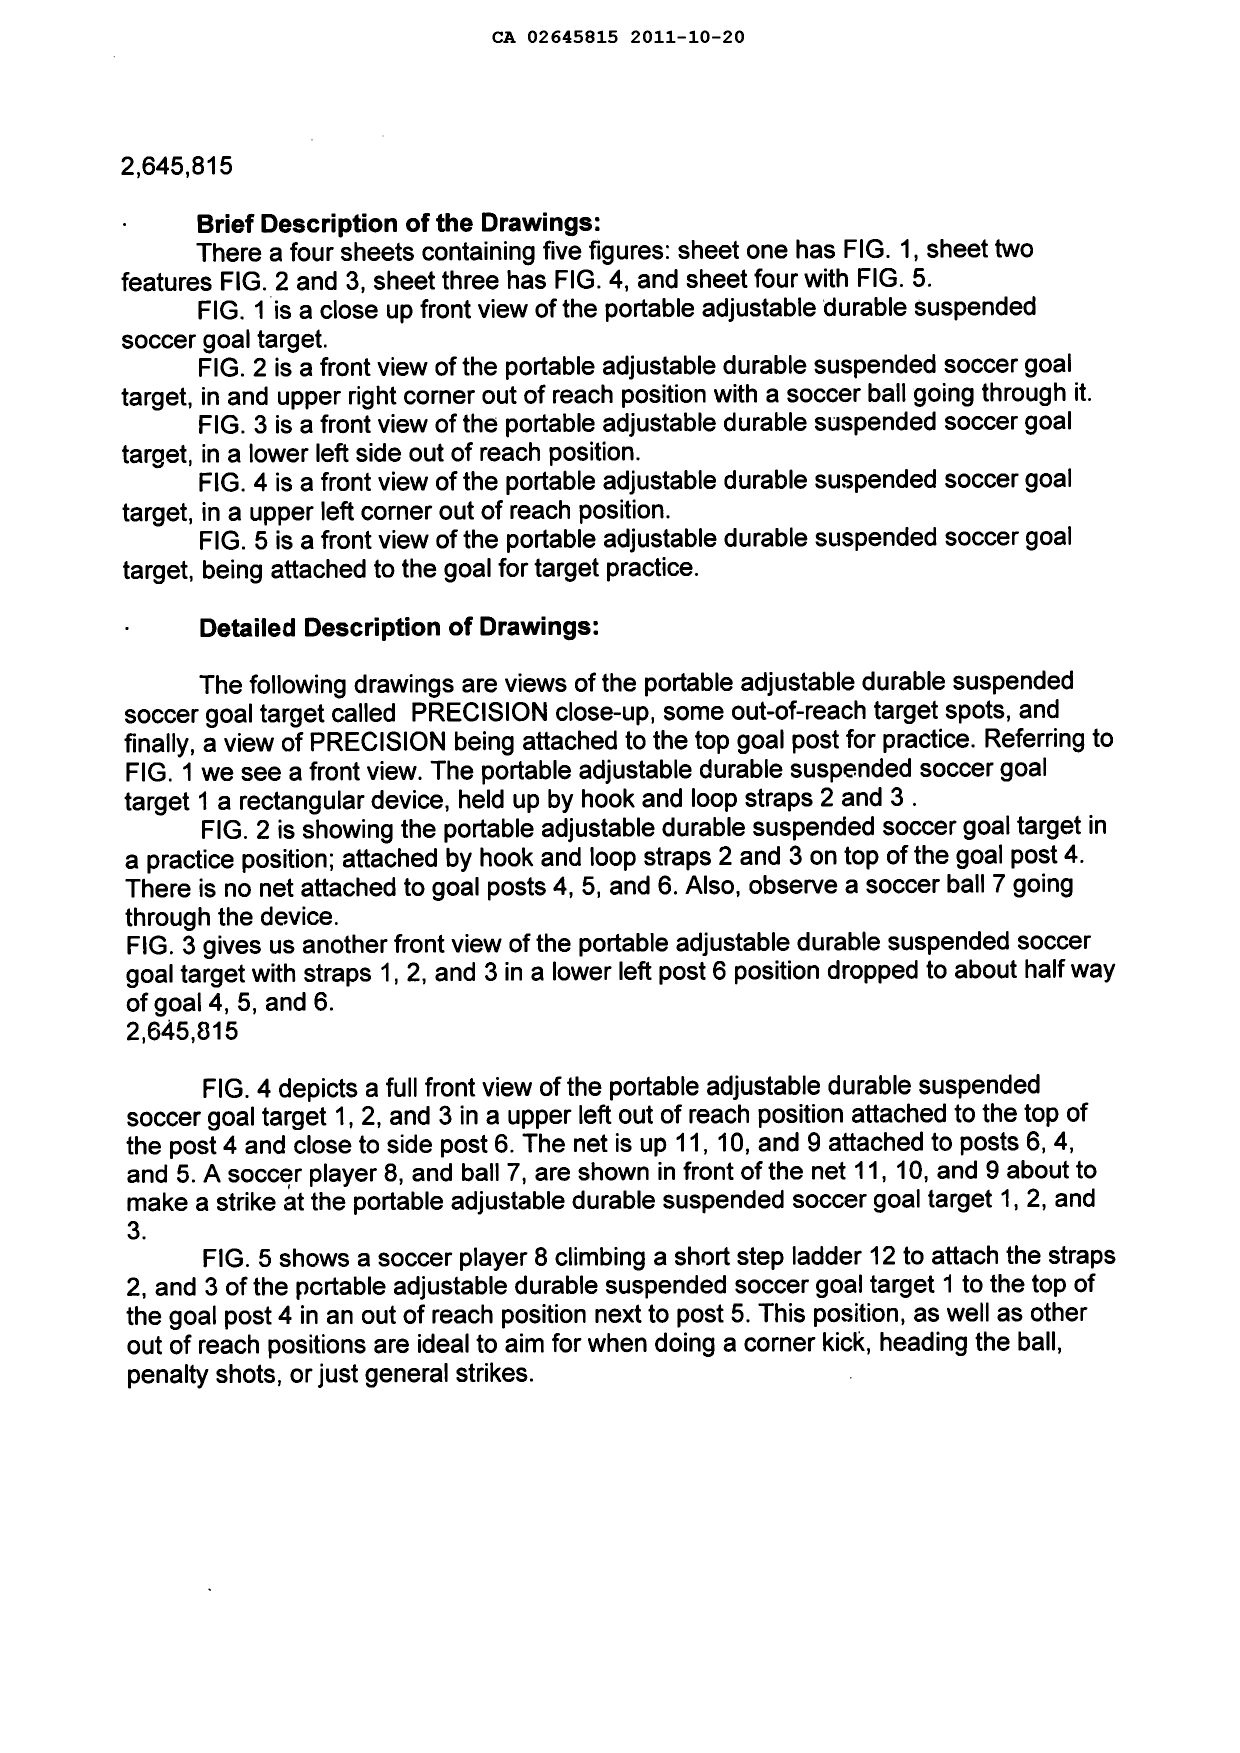 Canadian Patent Document 2645815. Description 20111020. Image 2 of 3